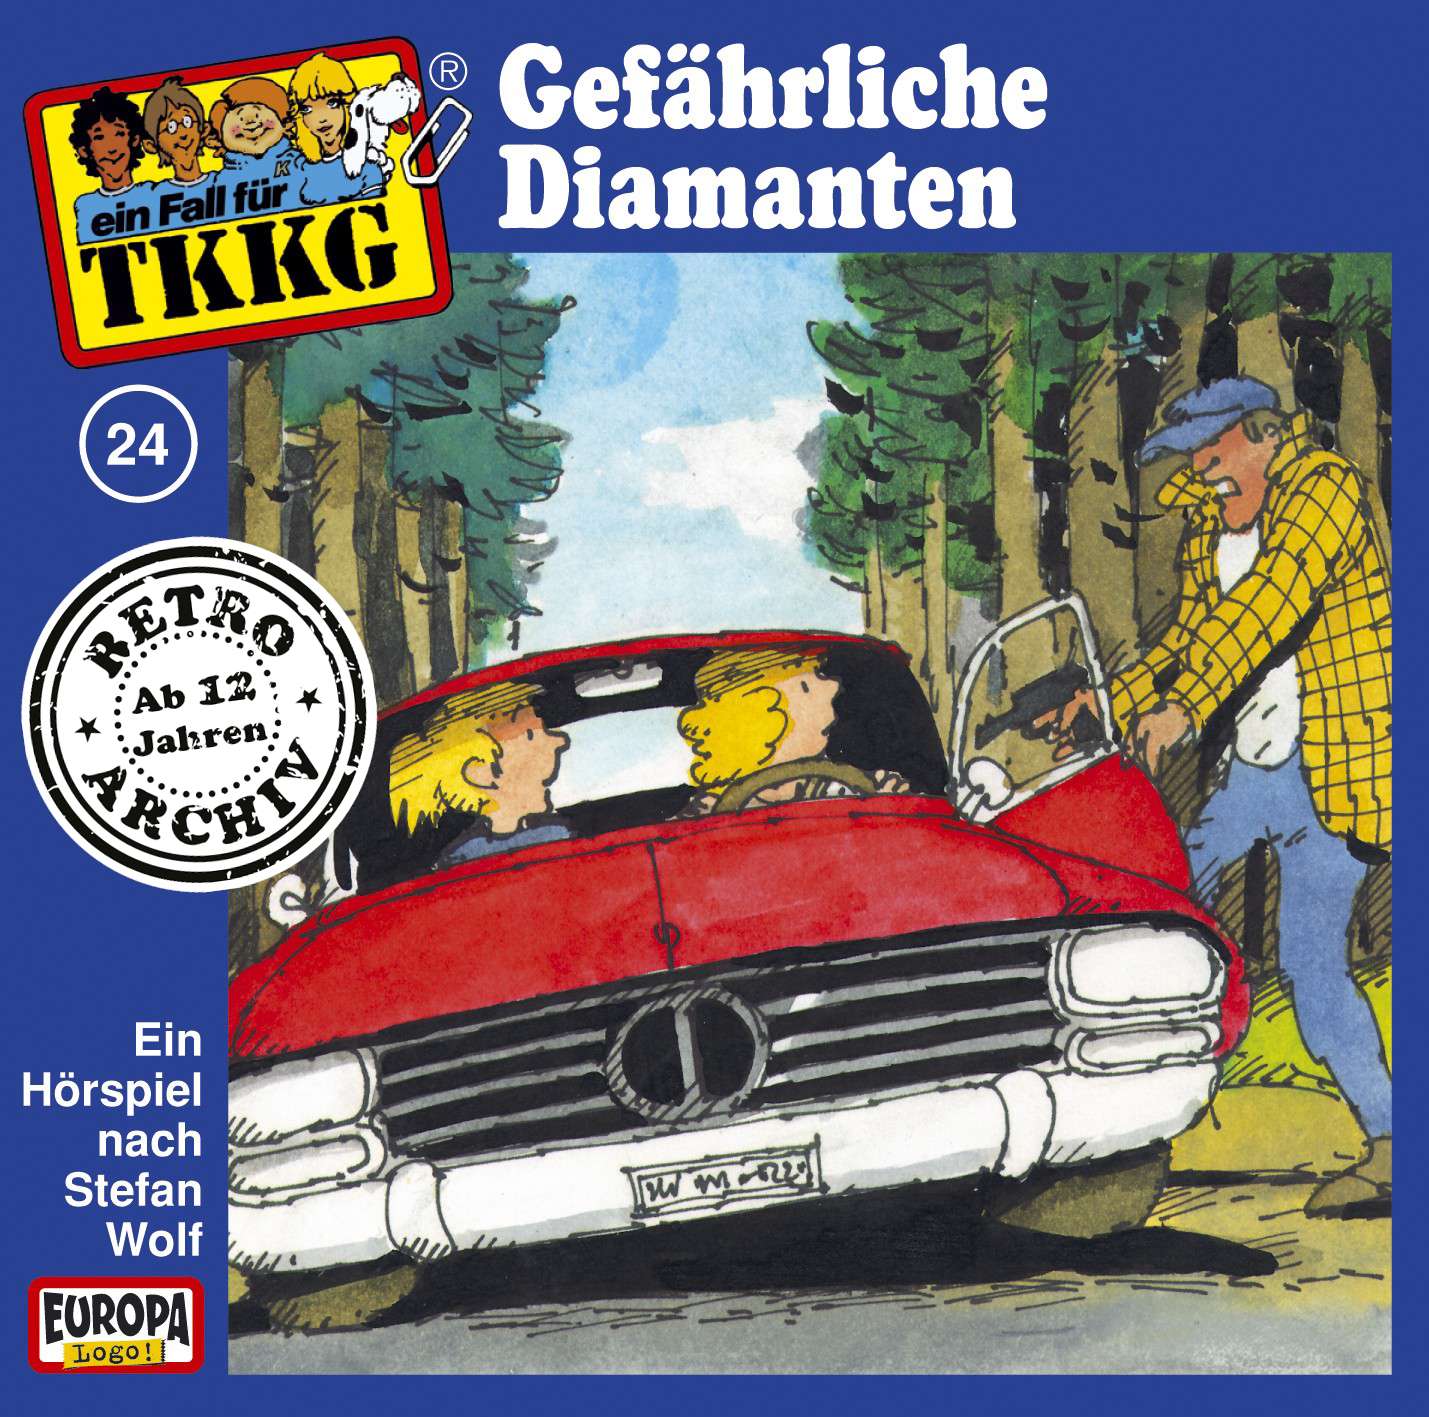 TKKG Retro-Archiv: Gefährliche Diamanten